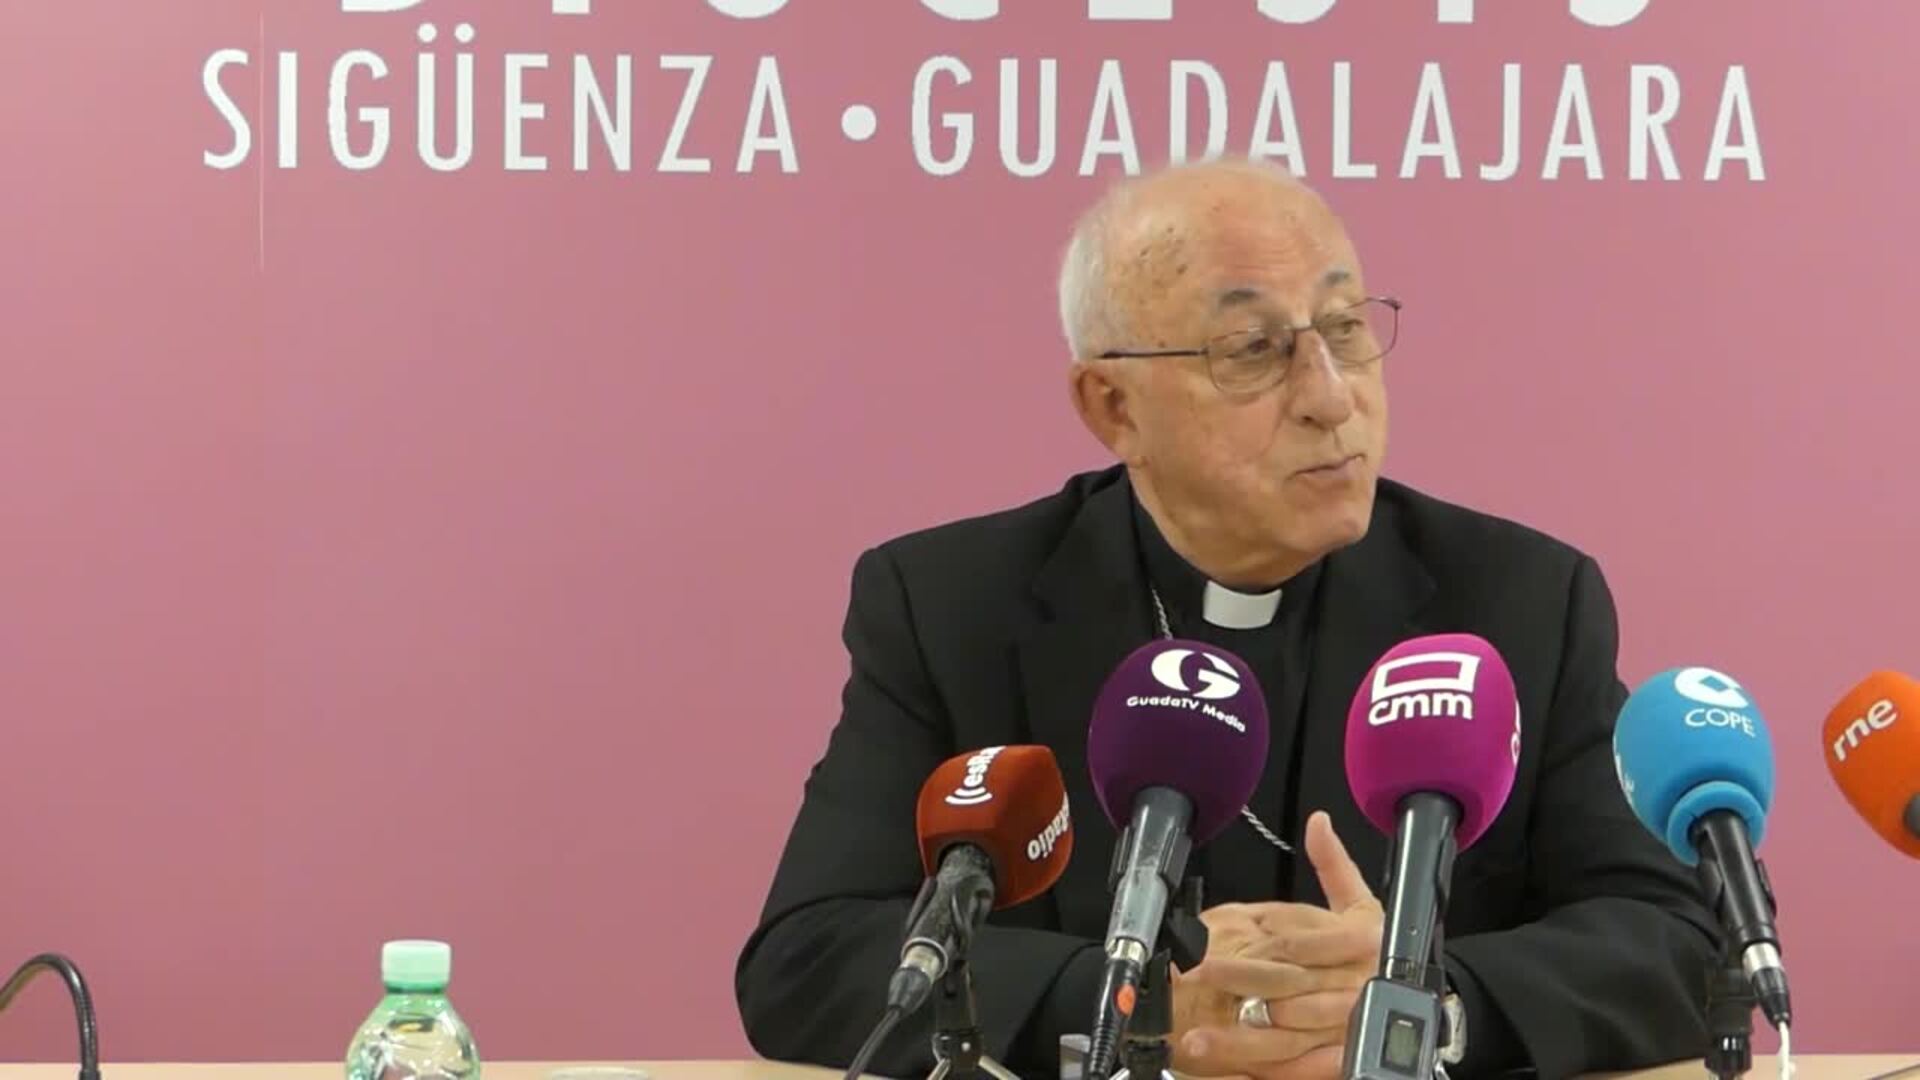 Julián Ruiz Martorell tomará posesión como nuevo obispo de Sigüenza-Guadalajara el 23 de diciembre